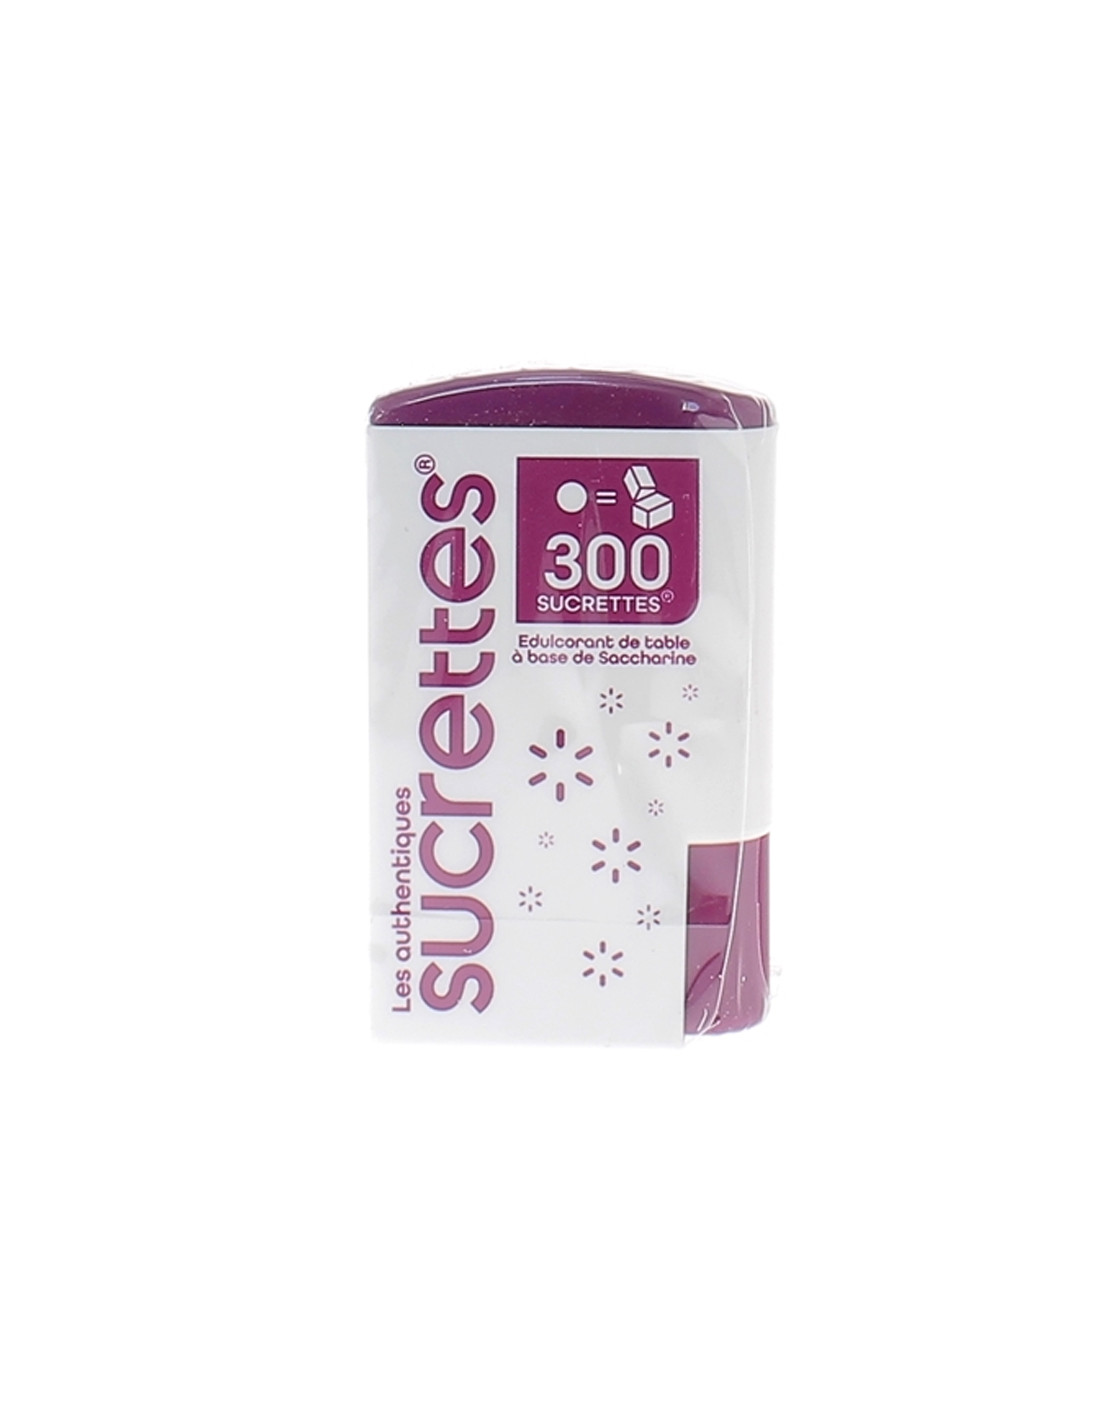 Les authentiques Sucrettes Edulcorant de Table. 300 sucrettes | Archange  Pharma